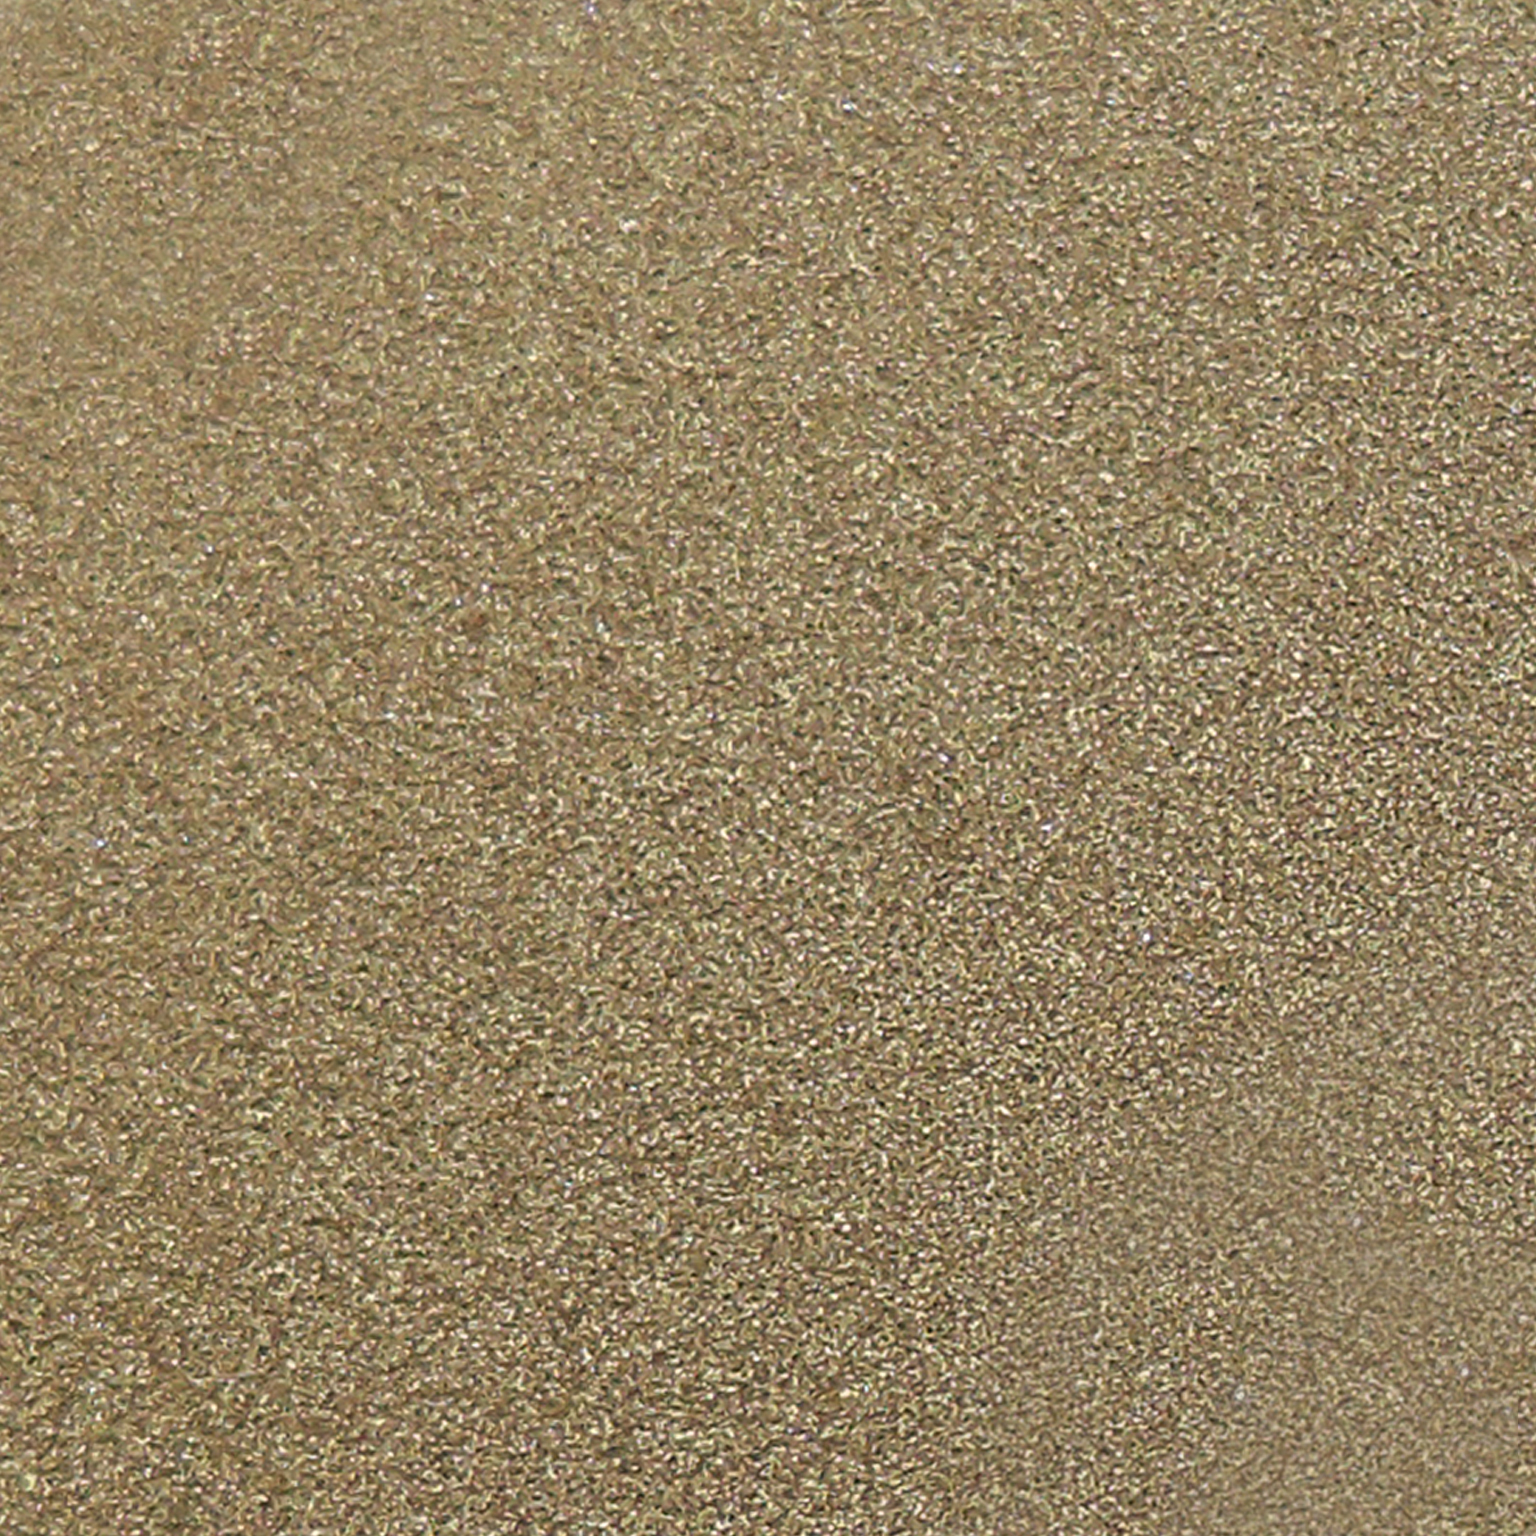 Échantillon de thermolaquage sable mouillé